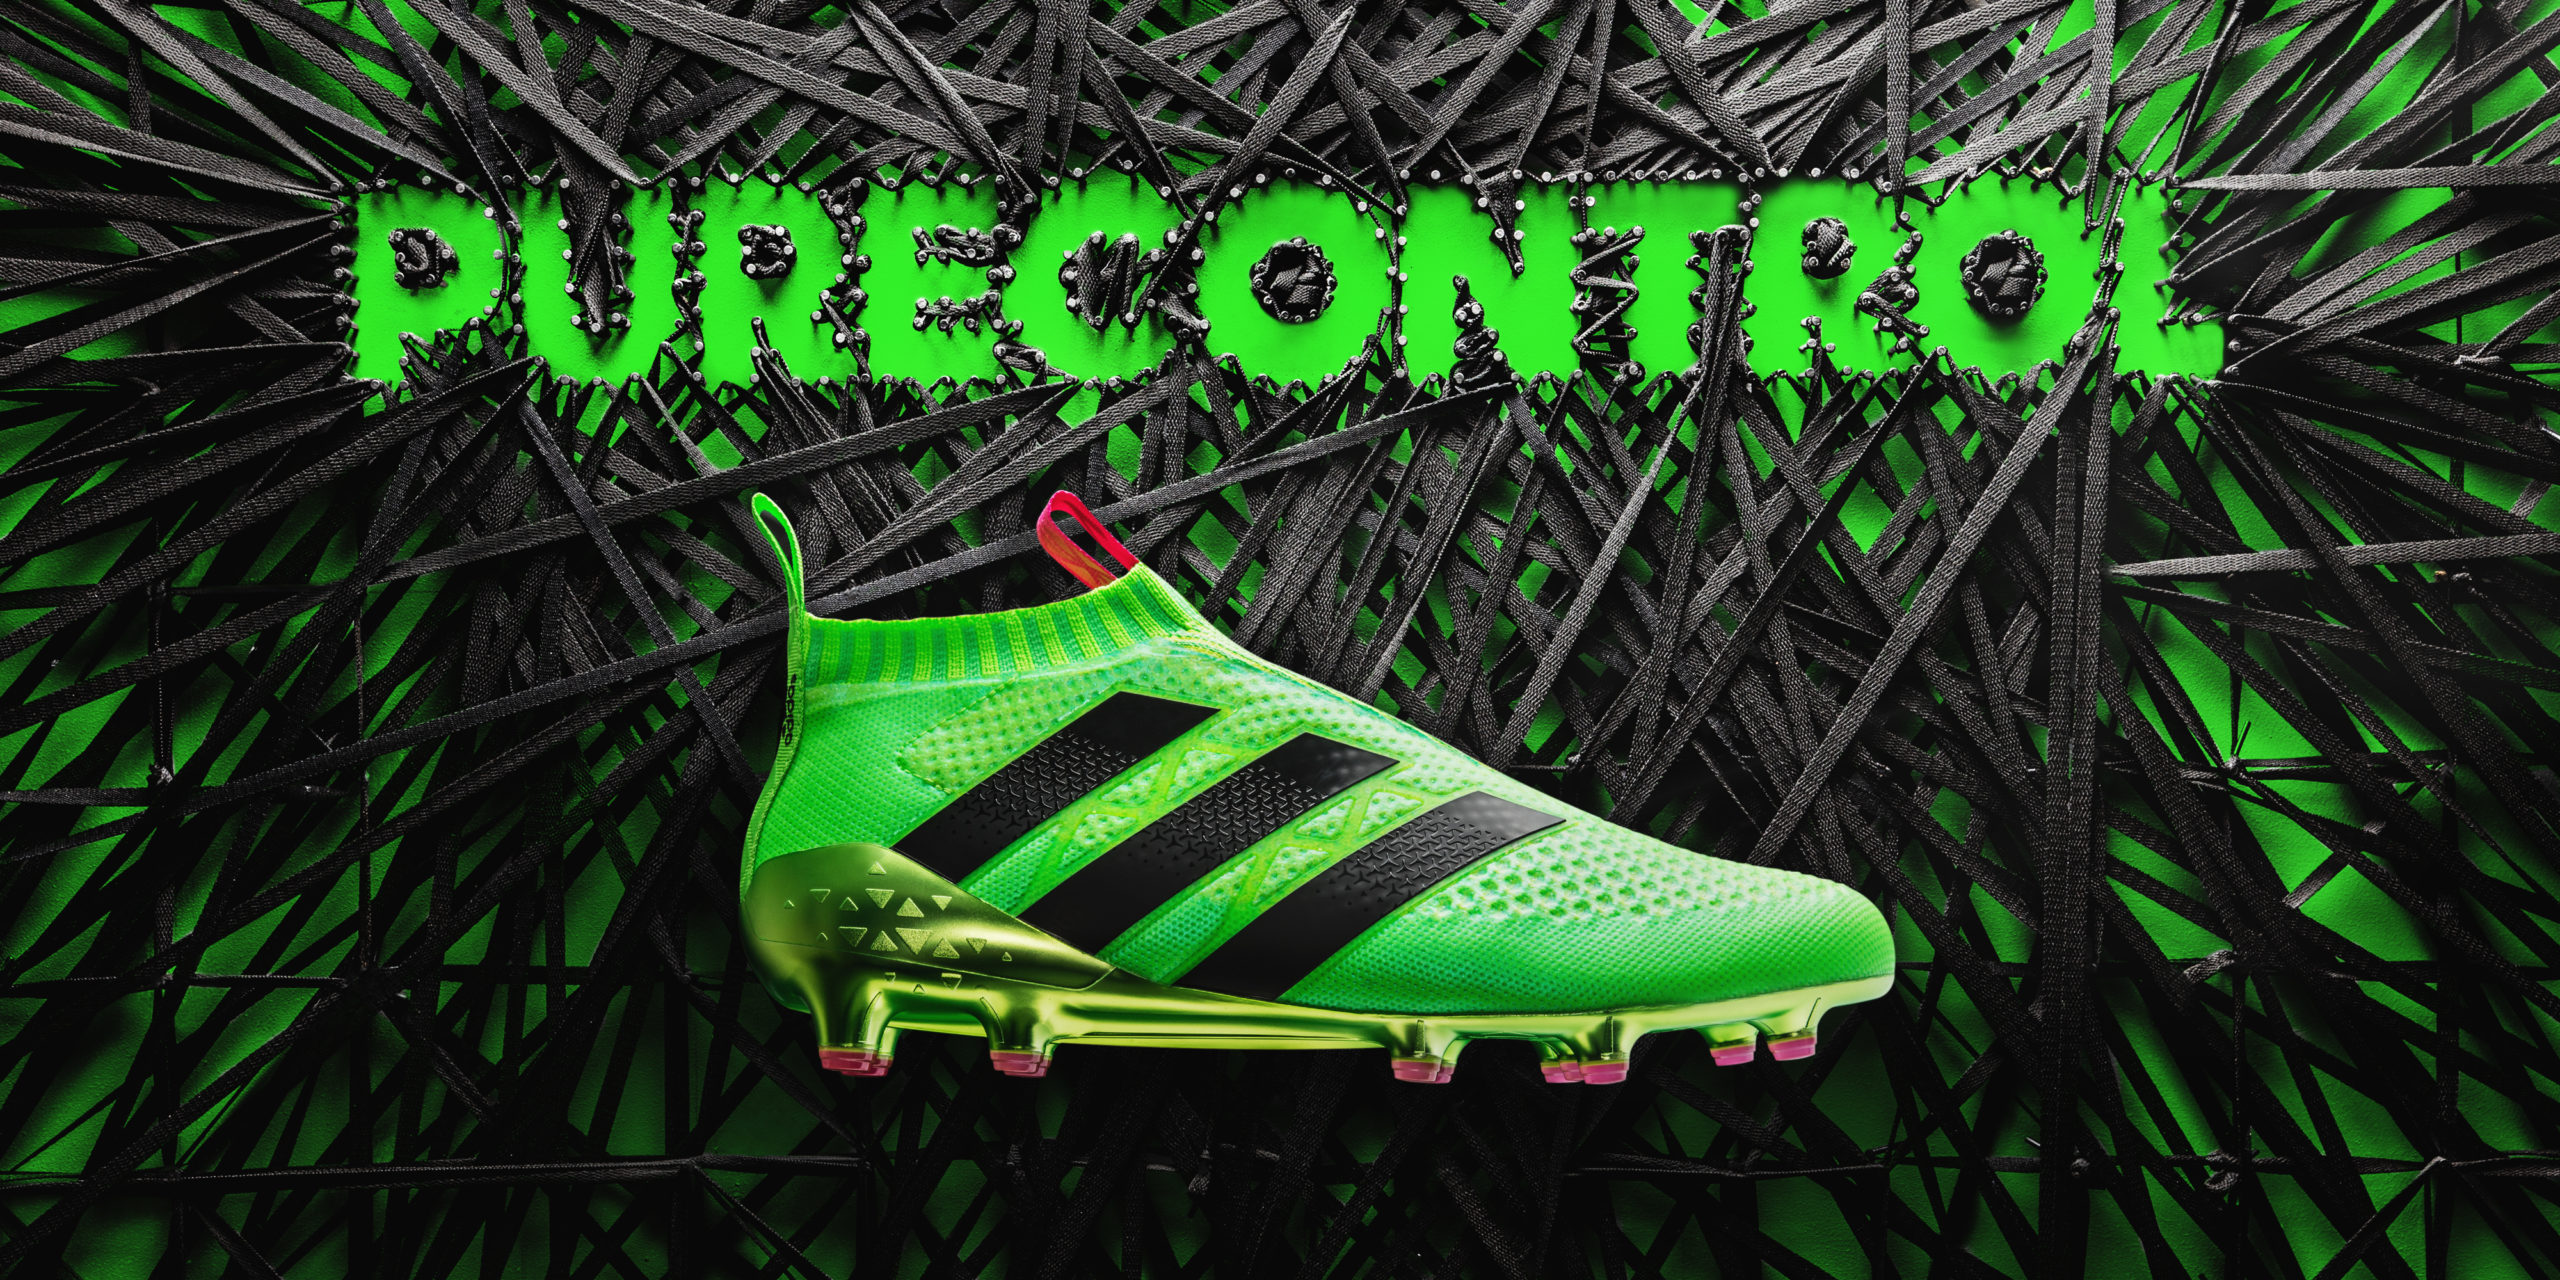 Adidas lancia le ACE 16+ Purecontrol, le prime scarpe da calcio senza lacci  [FOTO]